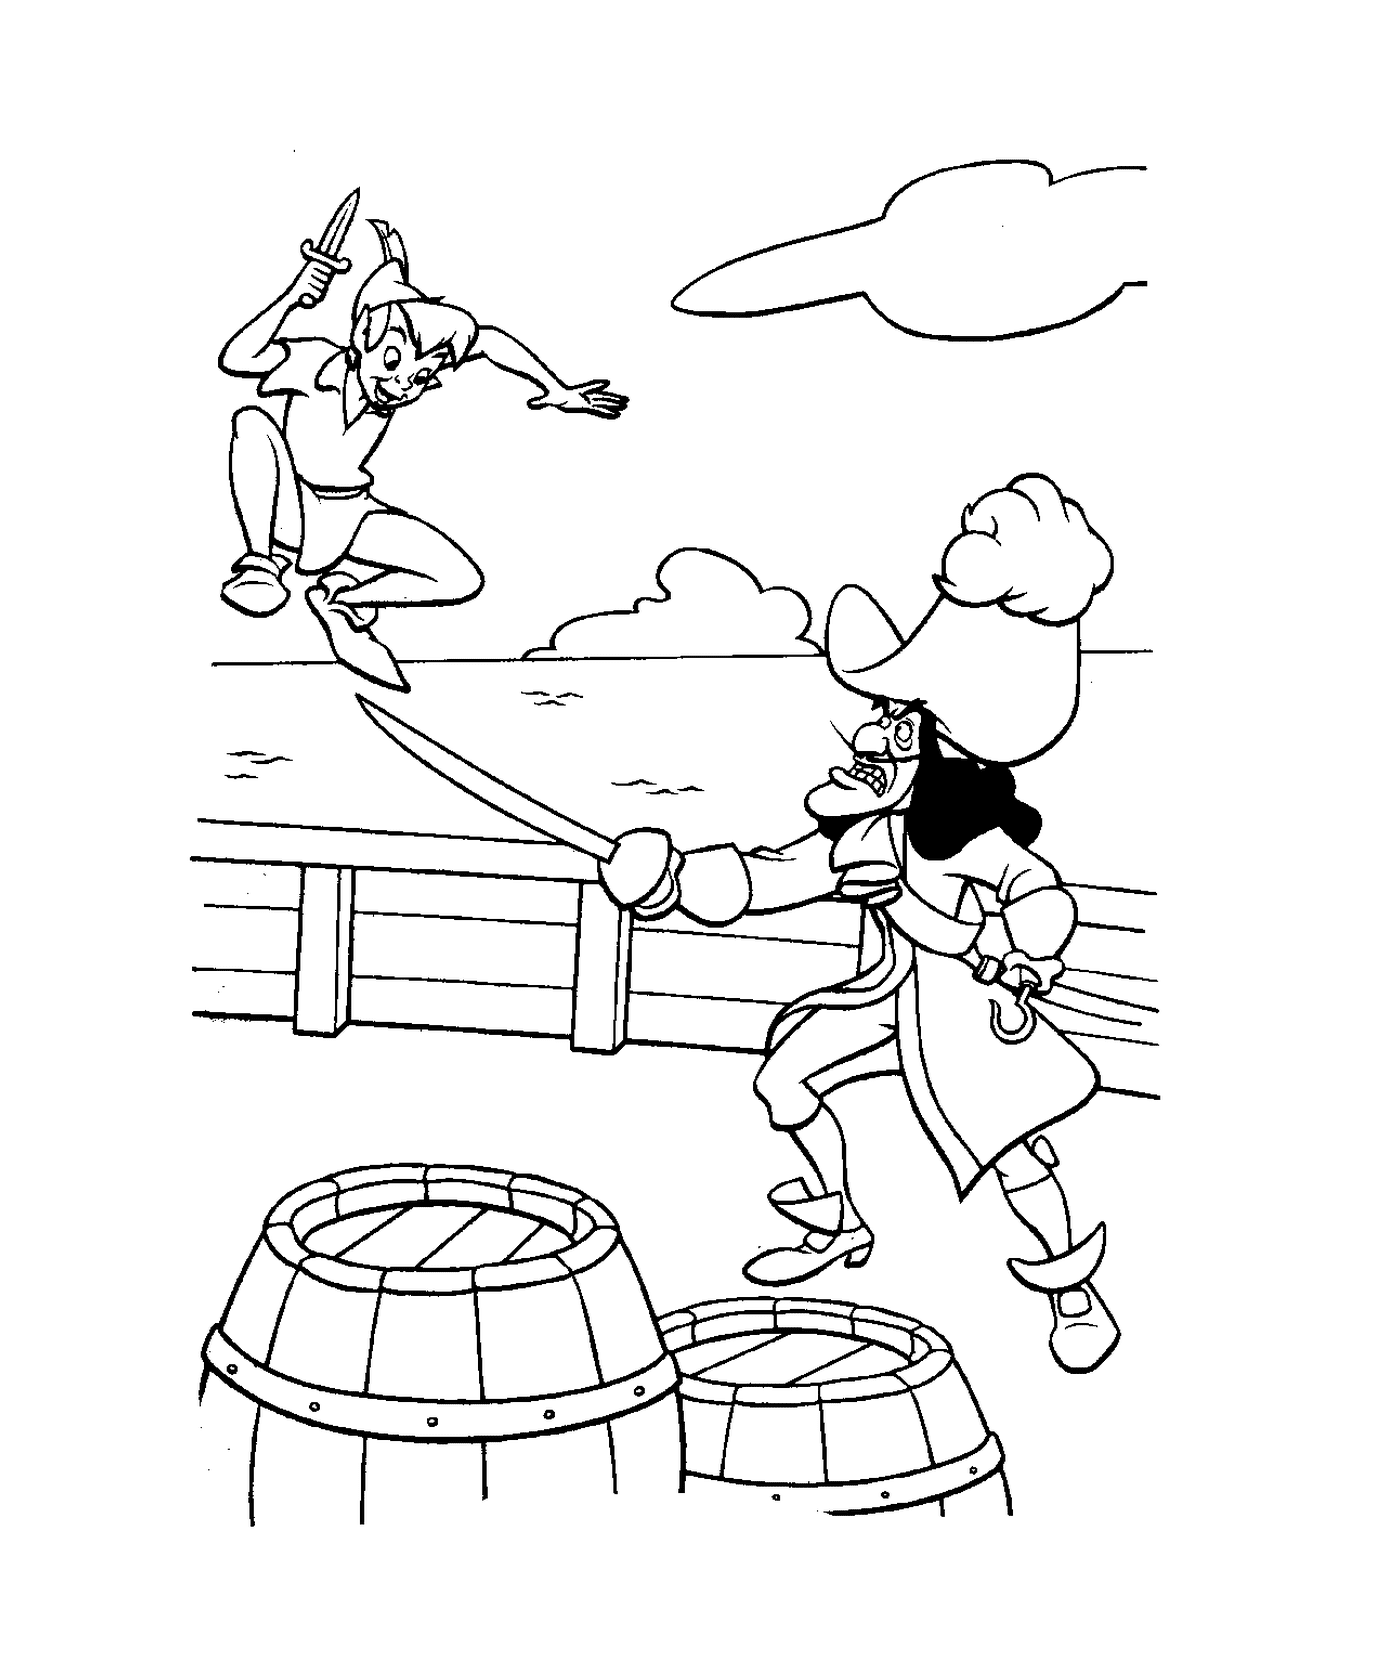  Peter Pan kämpft Piraten auf dem Boot 